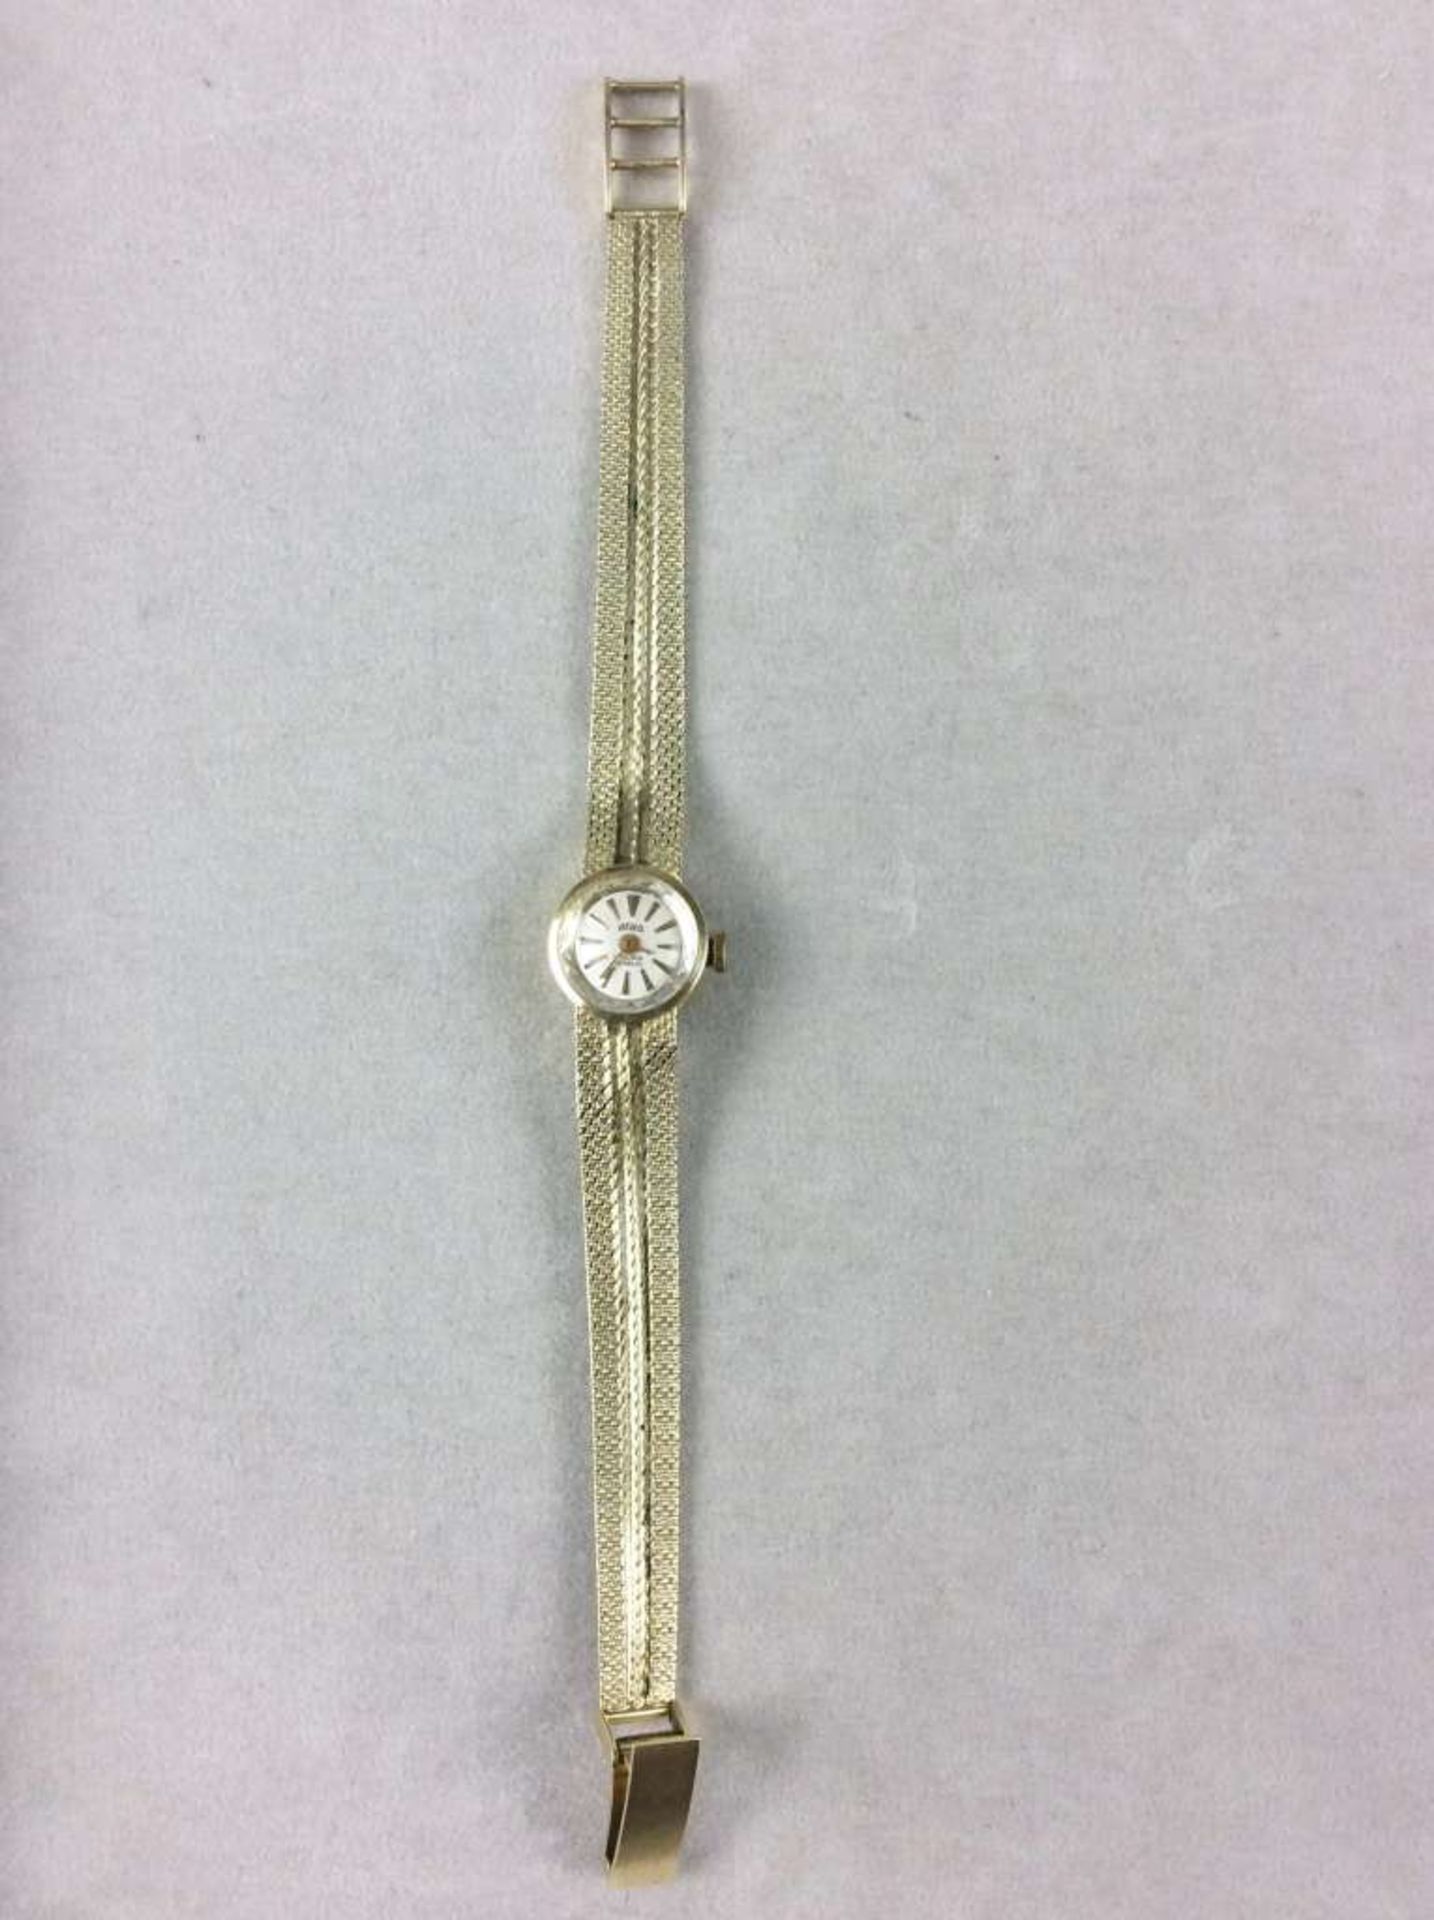 Afra-Damenarmbanduhr aus 585er-Gelbgold, rundes Ziffernblatt, mechanisches Uhrwerk/Handaufzug.